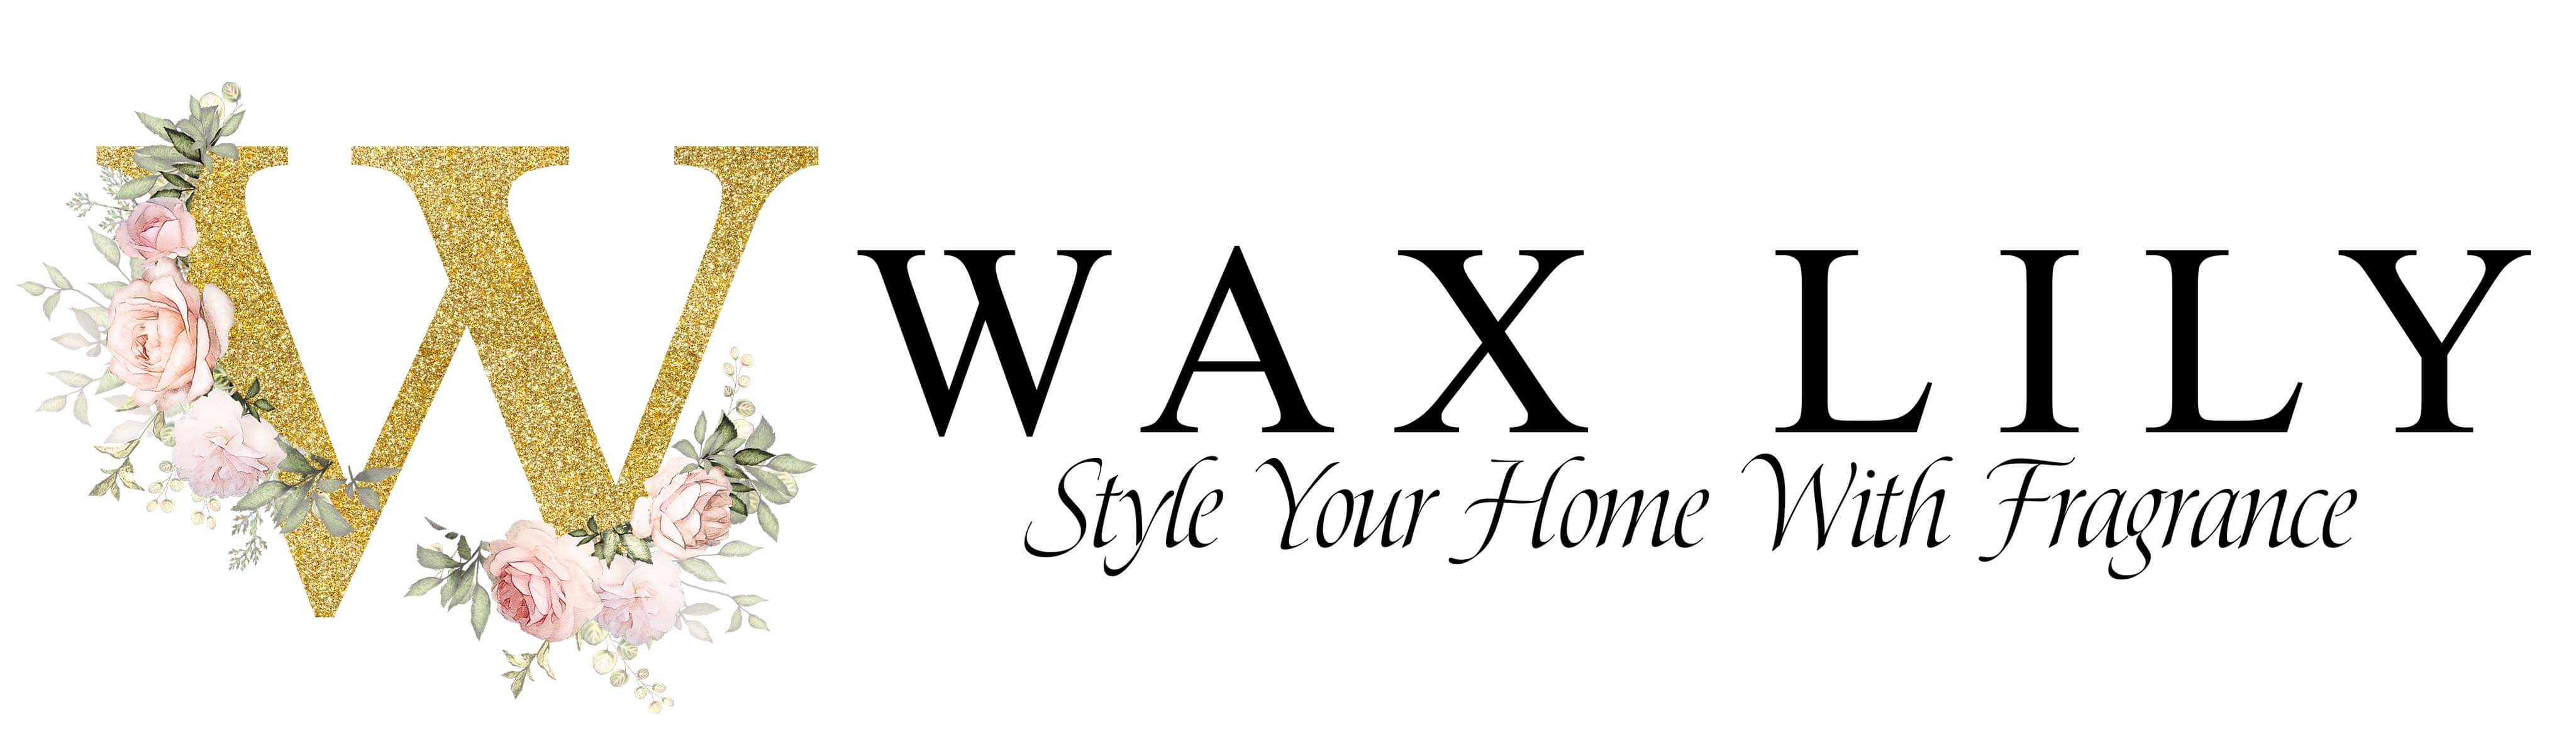 Wax Lily Ltd